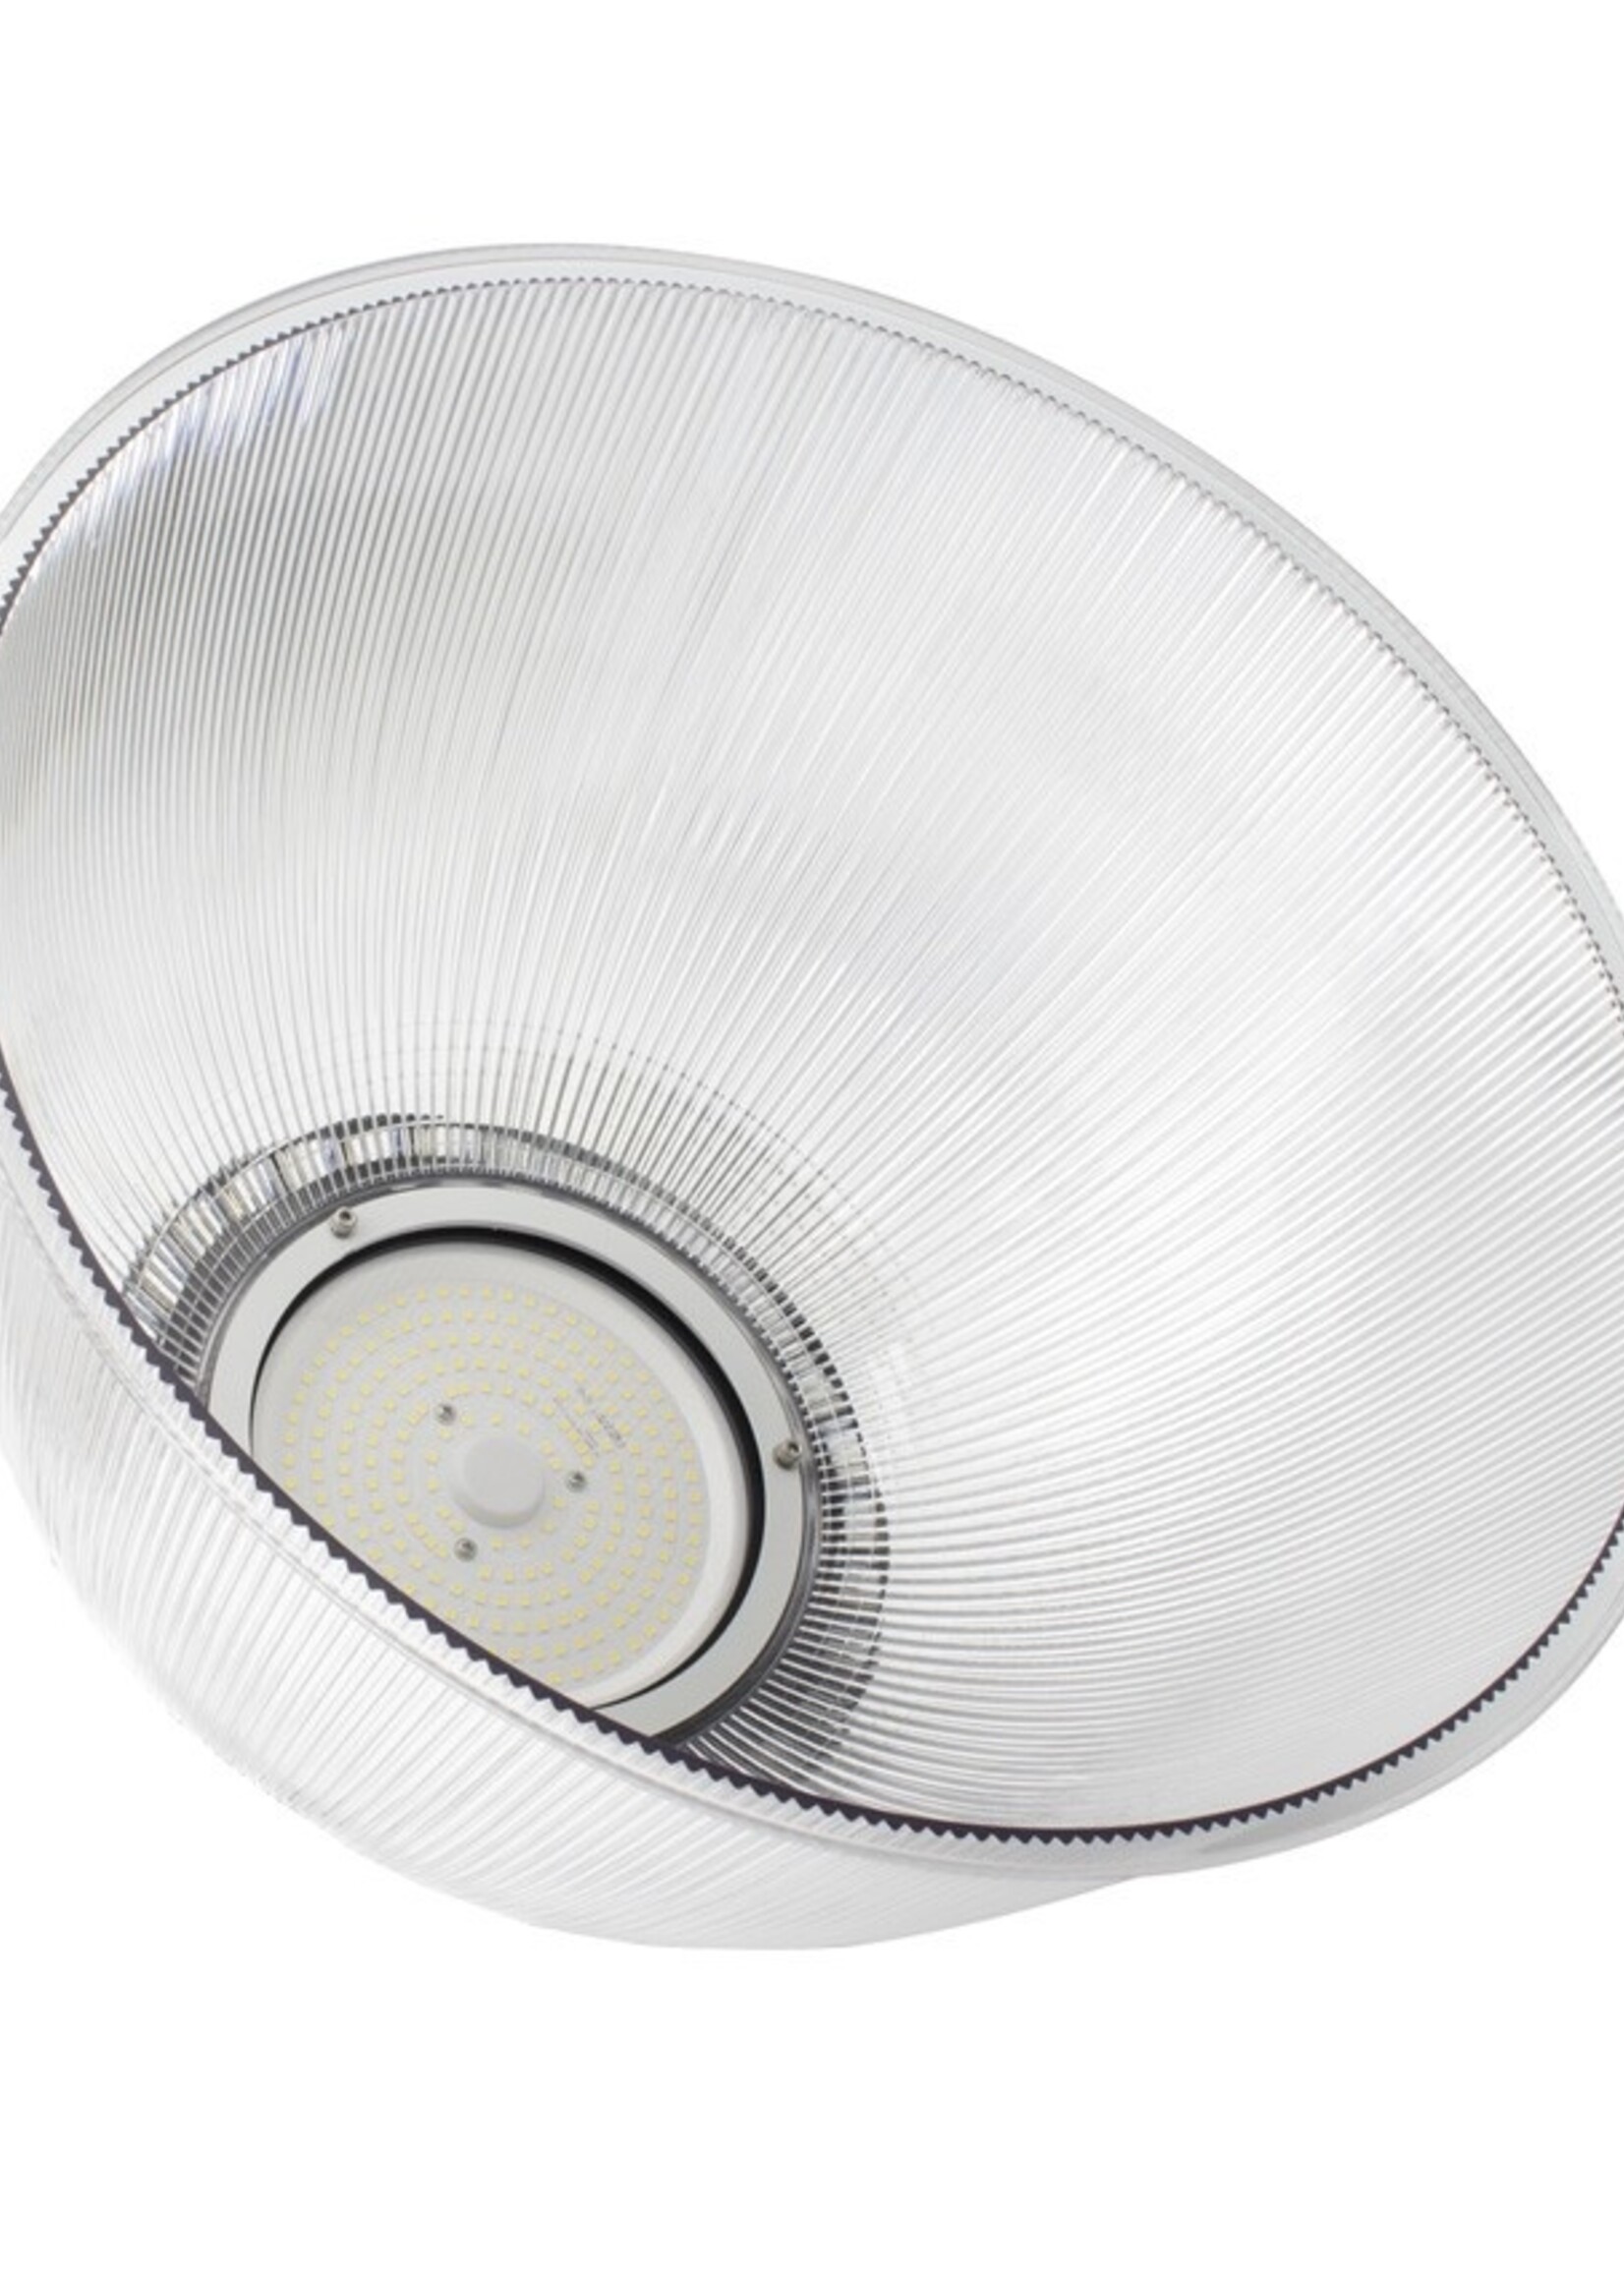 LEDWINKEL-Online LED UFO Highbay reflector kap voor 240W 410x215mm